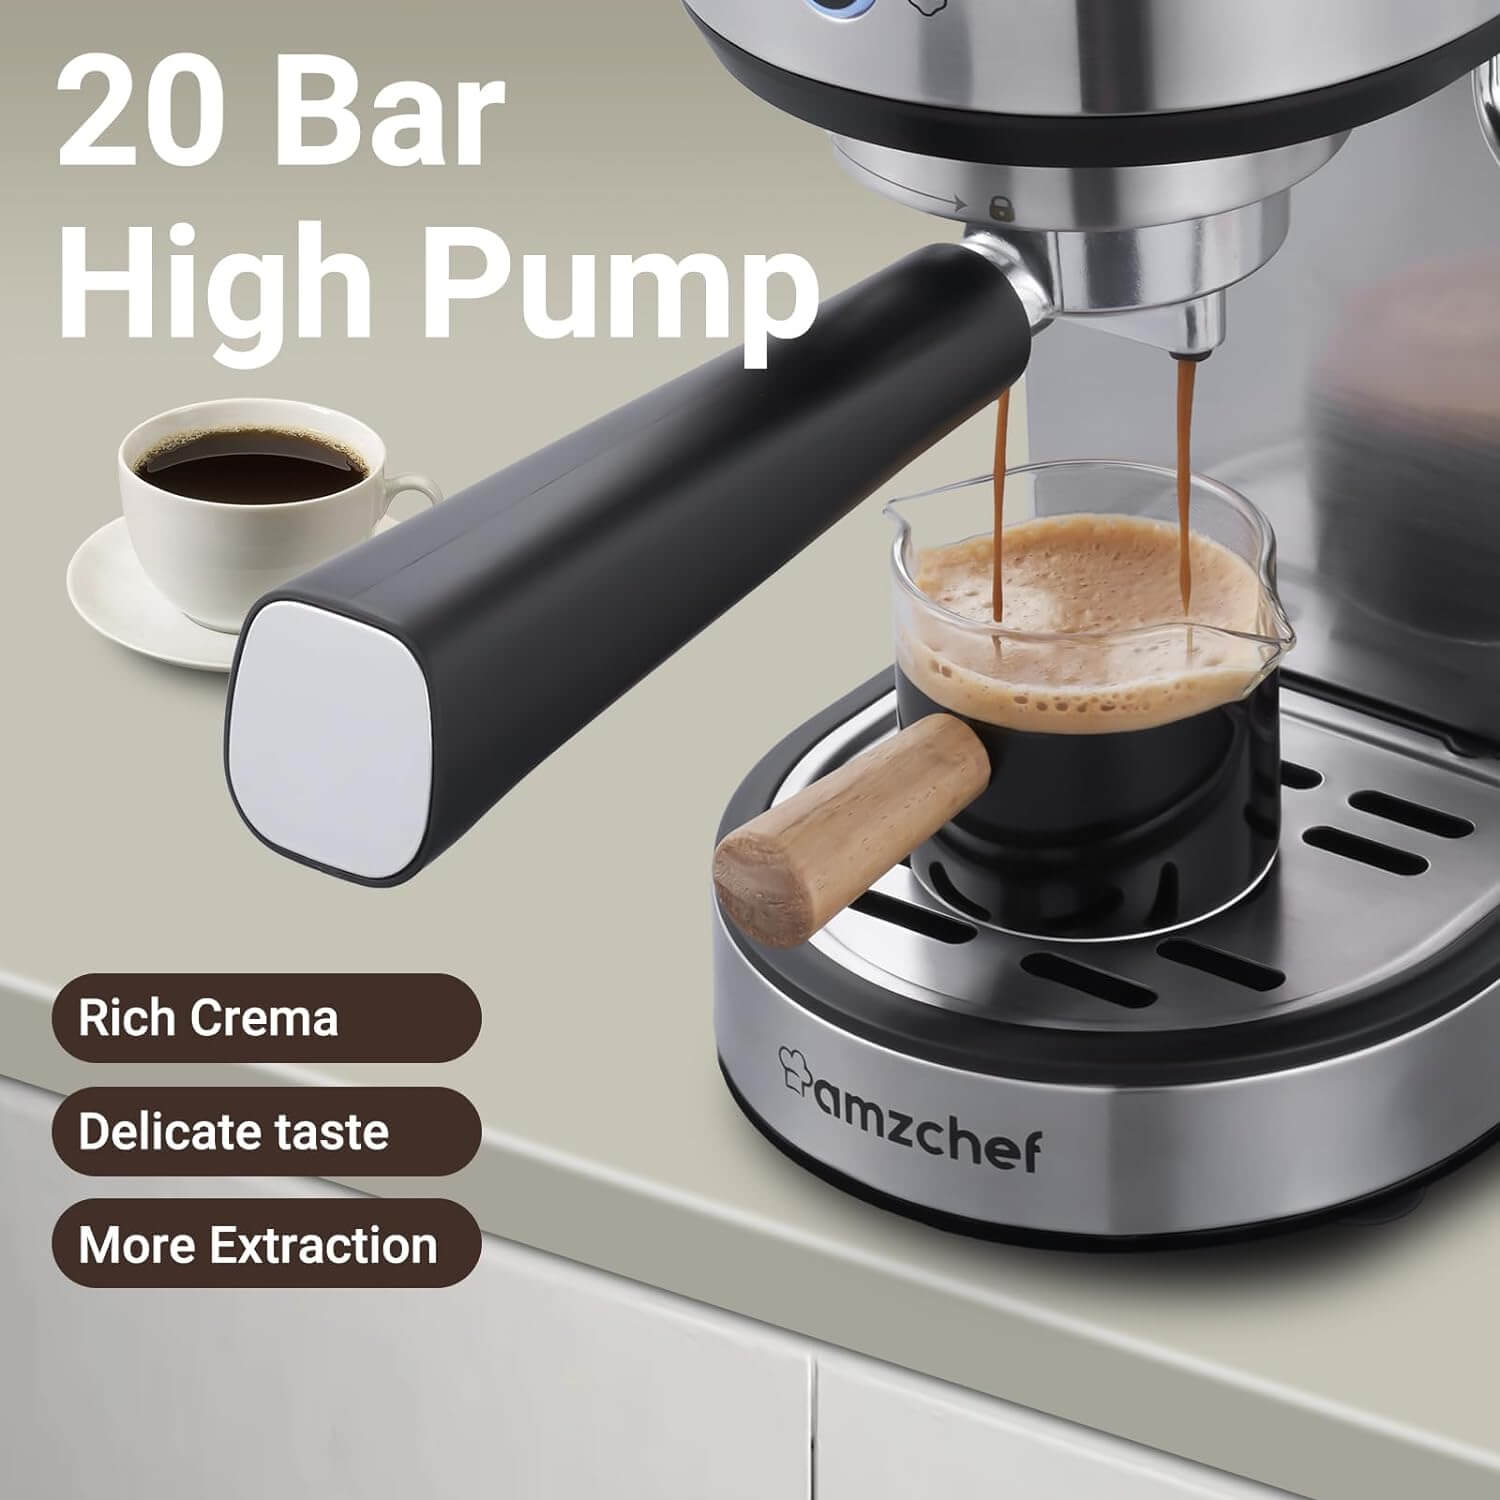 https://iamzchef.com/cdn/shop/files/amzchef-Espresso-Machine-20-Bar-high-pump_d0920321-c70e-444e-80c6-0897fccbda18.jpg?v=1701763023&width=1500